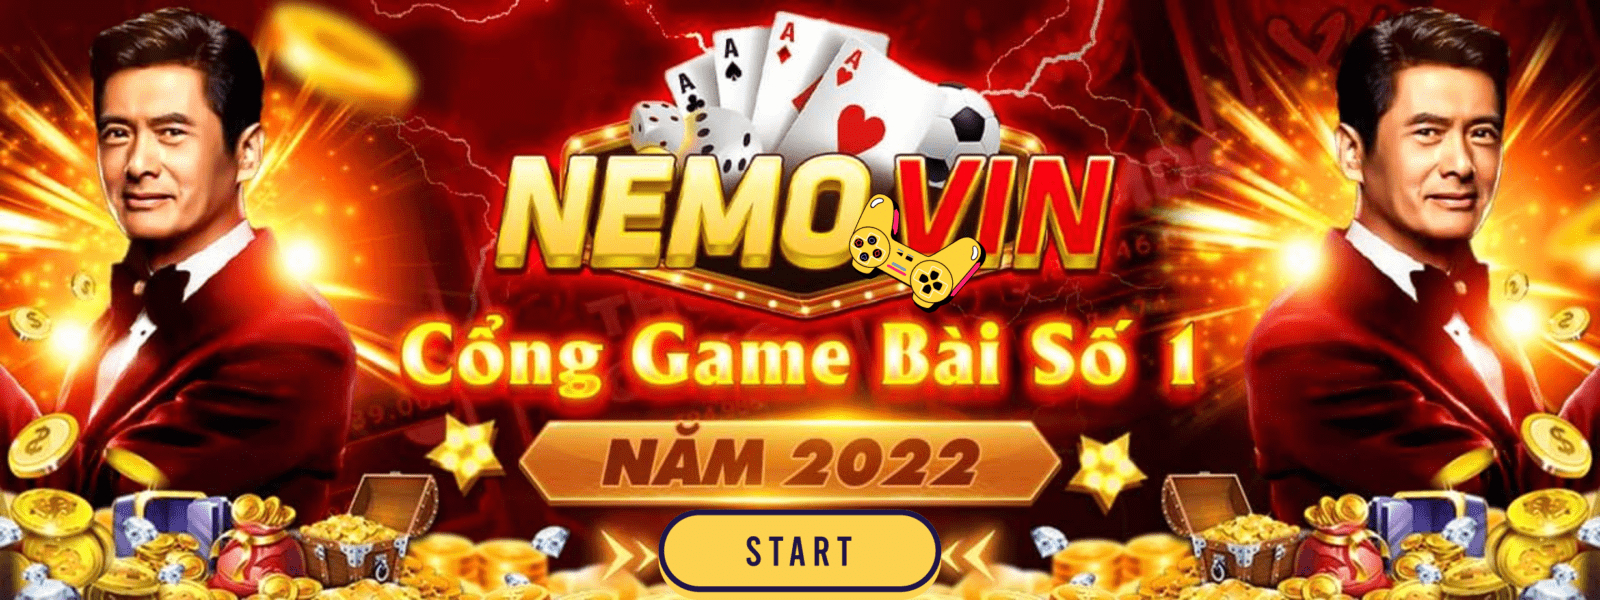 Nemo vin – Siêu phẩm game bài, gây sốt thị trường 2022